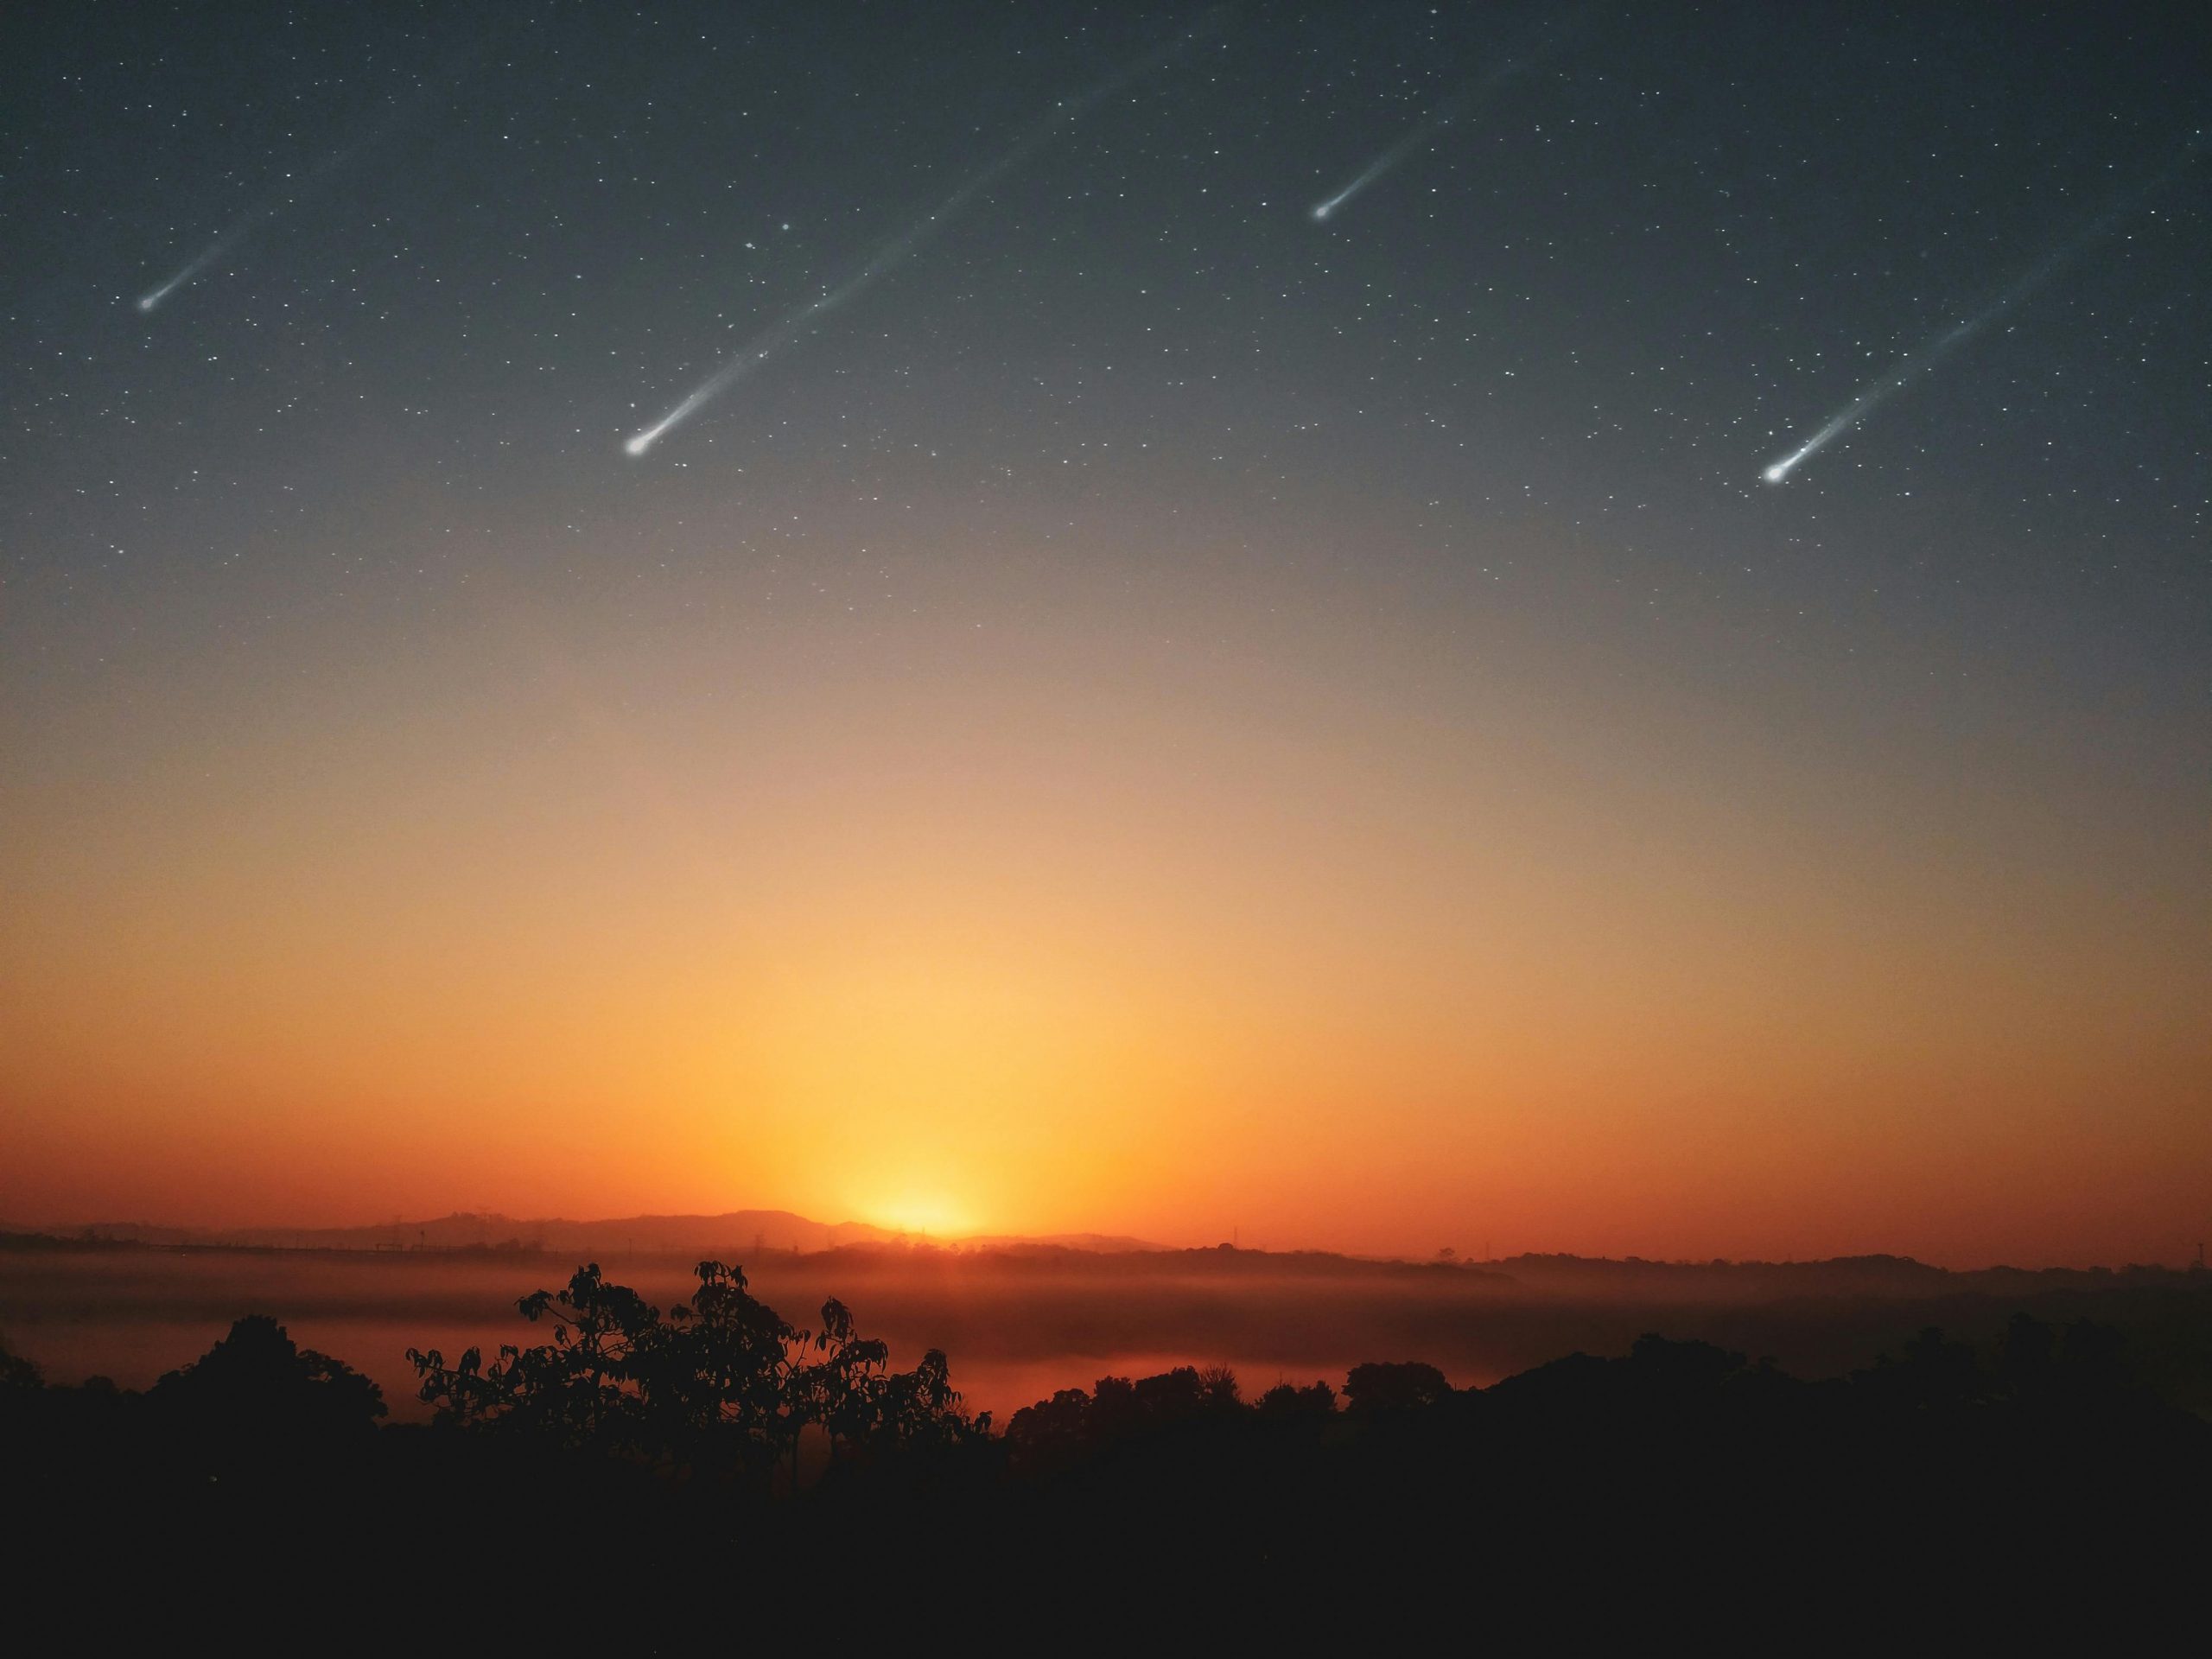 Si prevede che si verifichi uno degli sciami meteorici più forti, con un numero di meteore che raggiungerà le sessanta all'ora